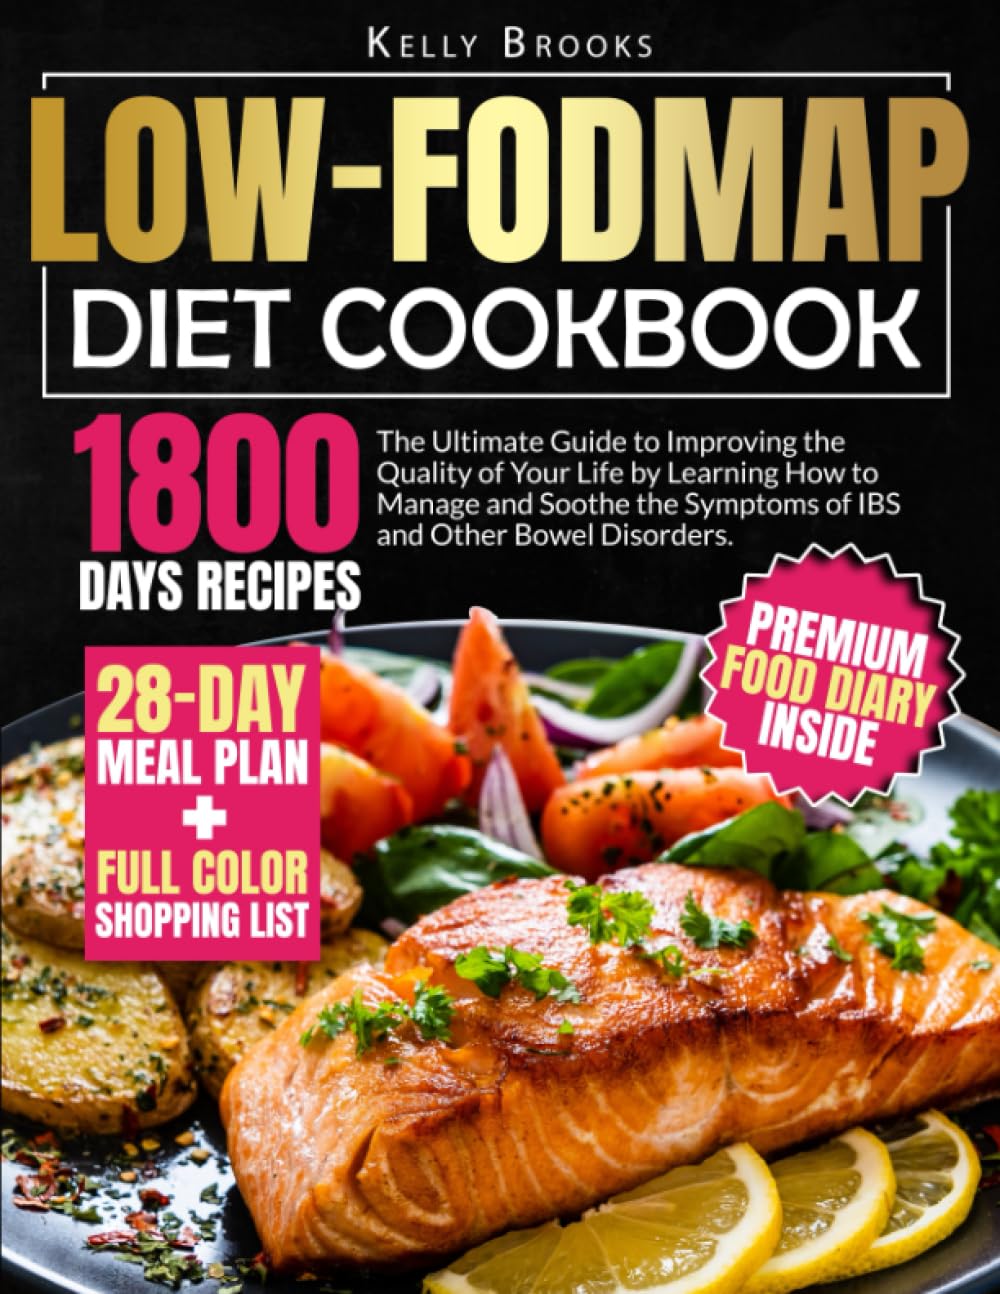 "Low-FODMAP Diet Cookbook"